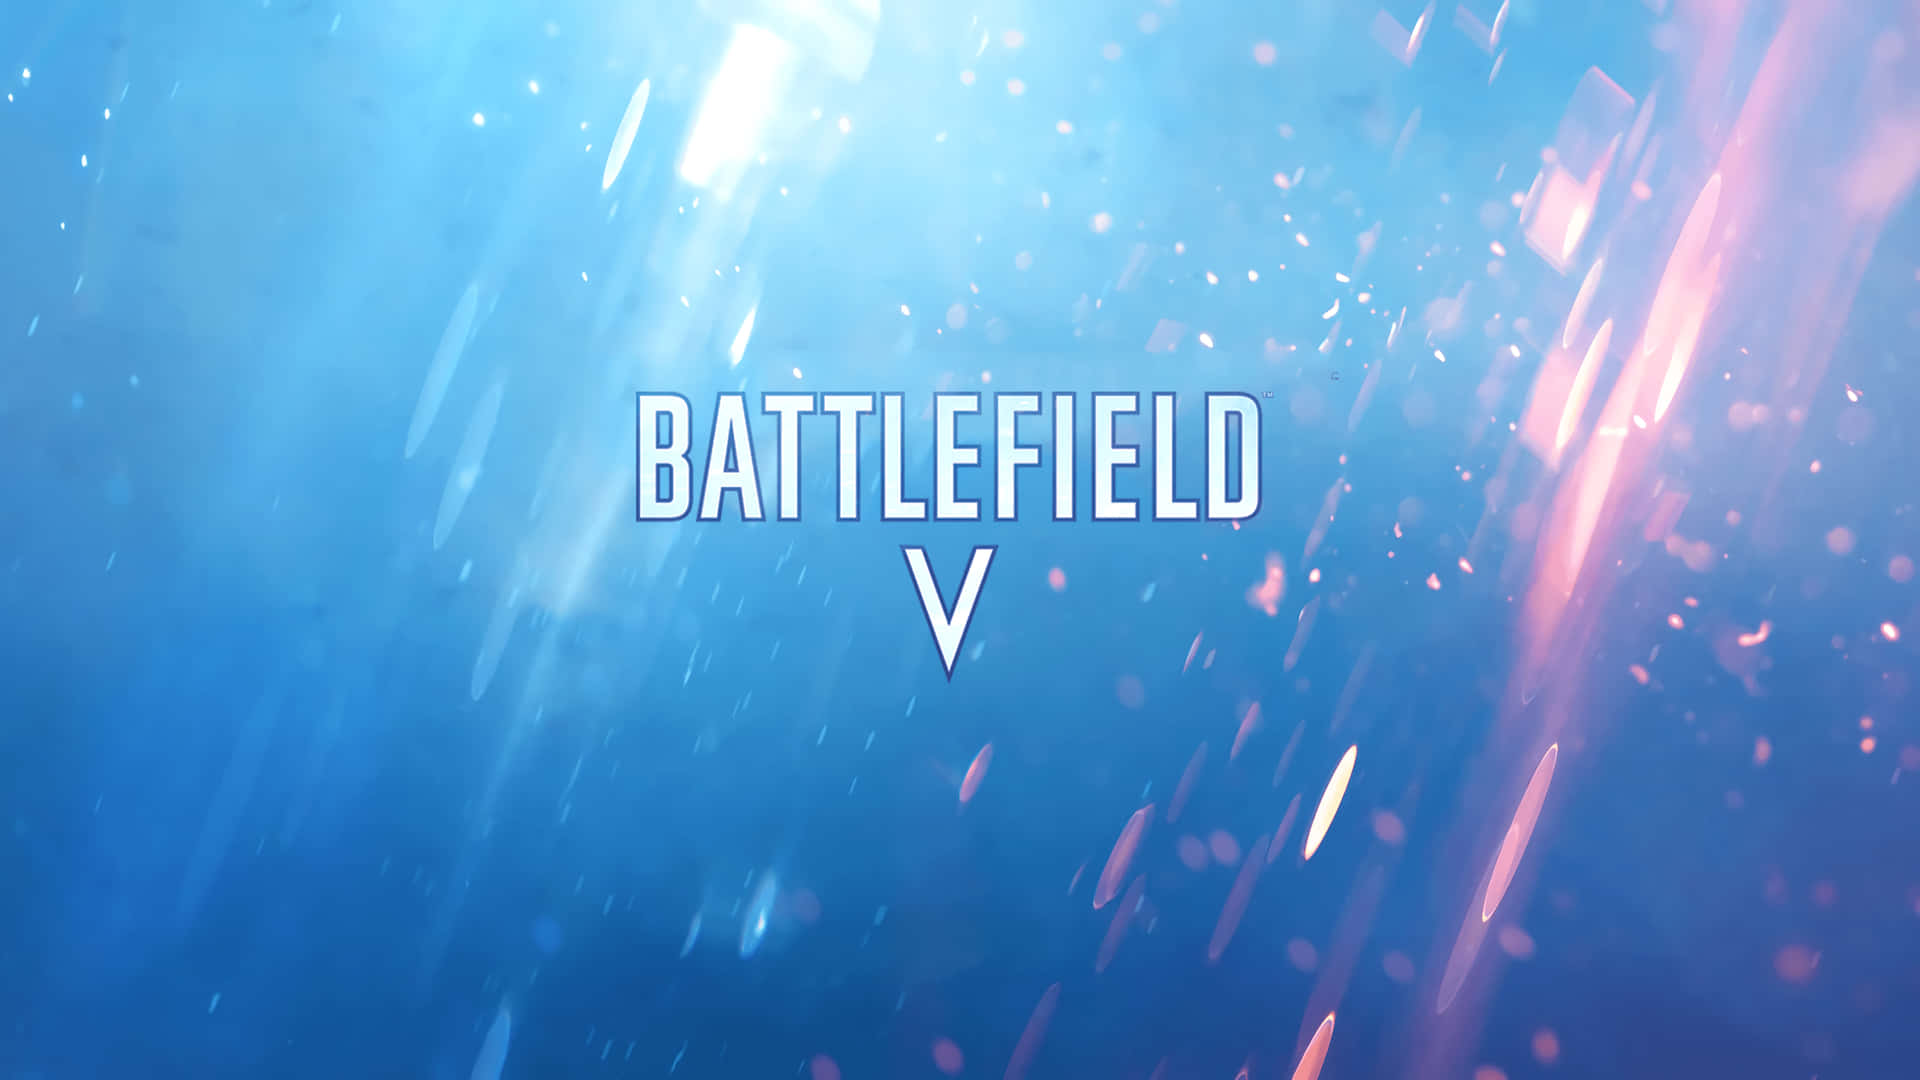 Battlefieldv - Uno Sfondo Blu E Blu Con Le Parole Battlefield V.